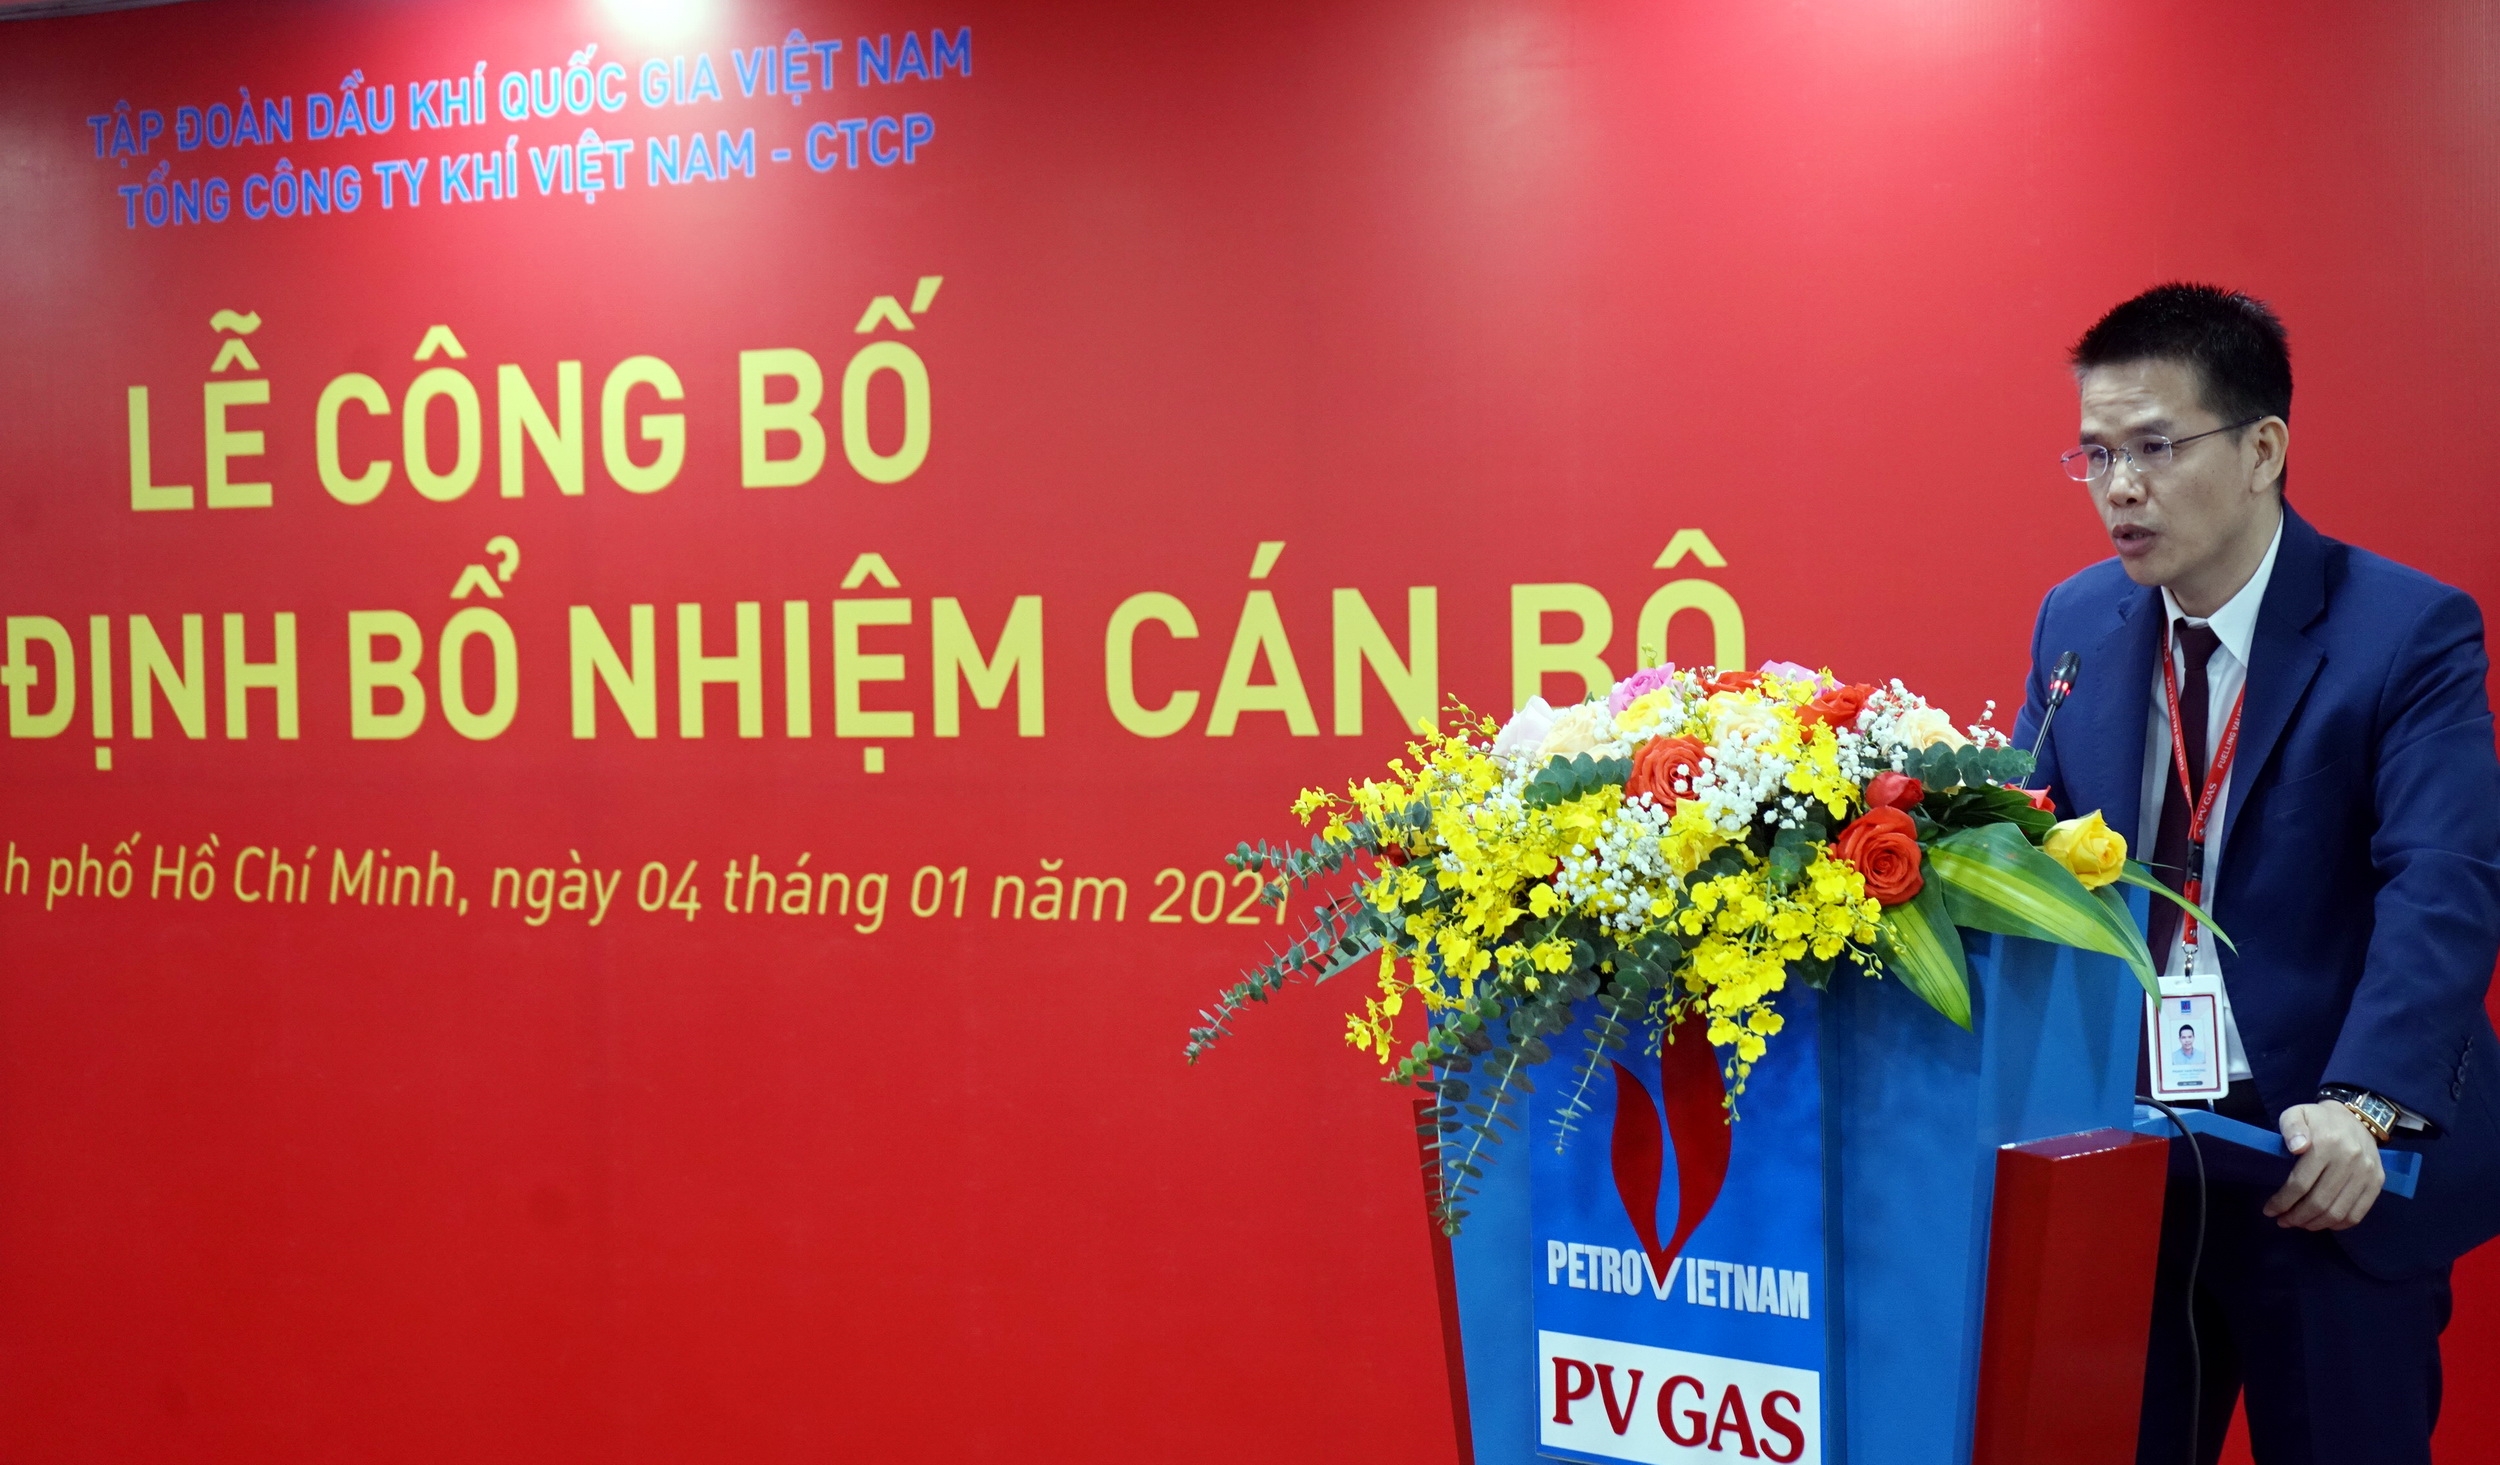 Phó tổng giám đốc PV GAS Phạm Văn Phong, thay mặt các cán bộ vừa nhận nhiệm vụ, phát biểu nhận nhiệm vụ ở cương vị mới